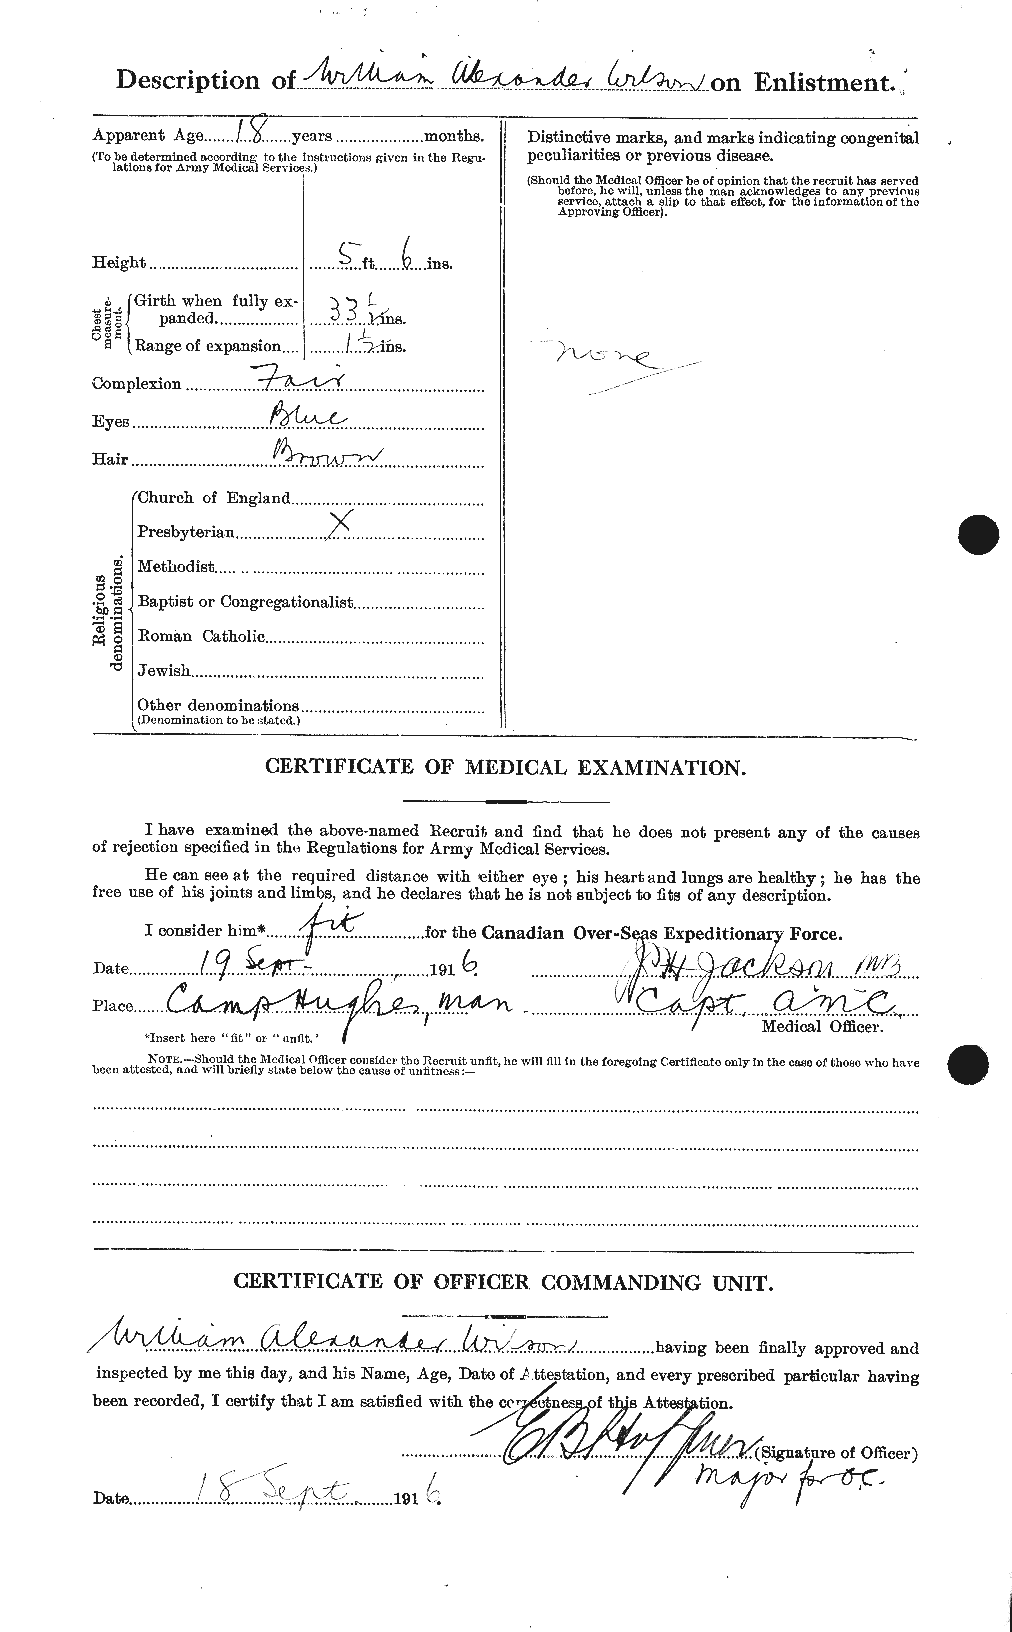 Dossiers du Personnel de la Première Guerre mondiale - CEC 681926b